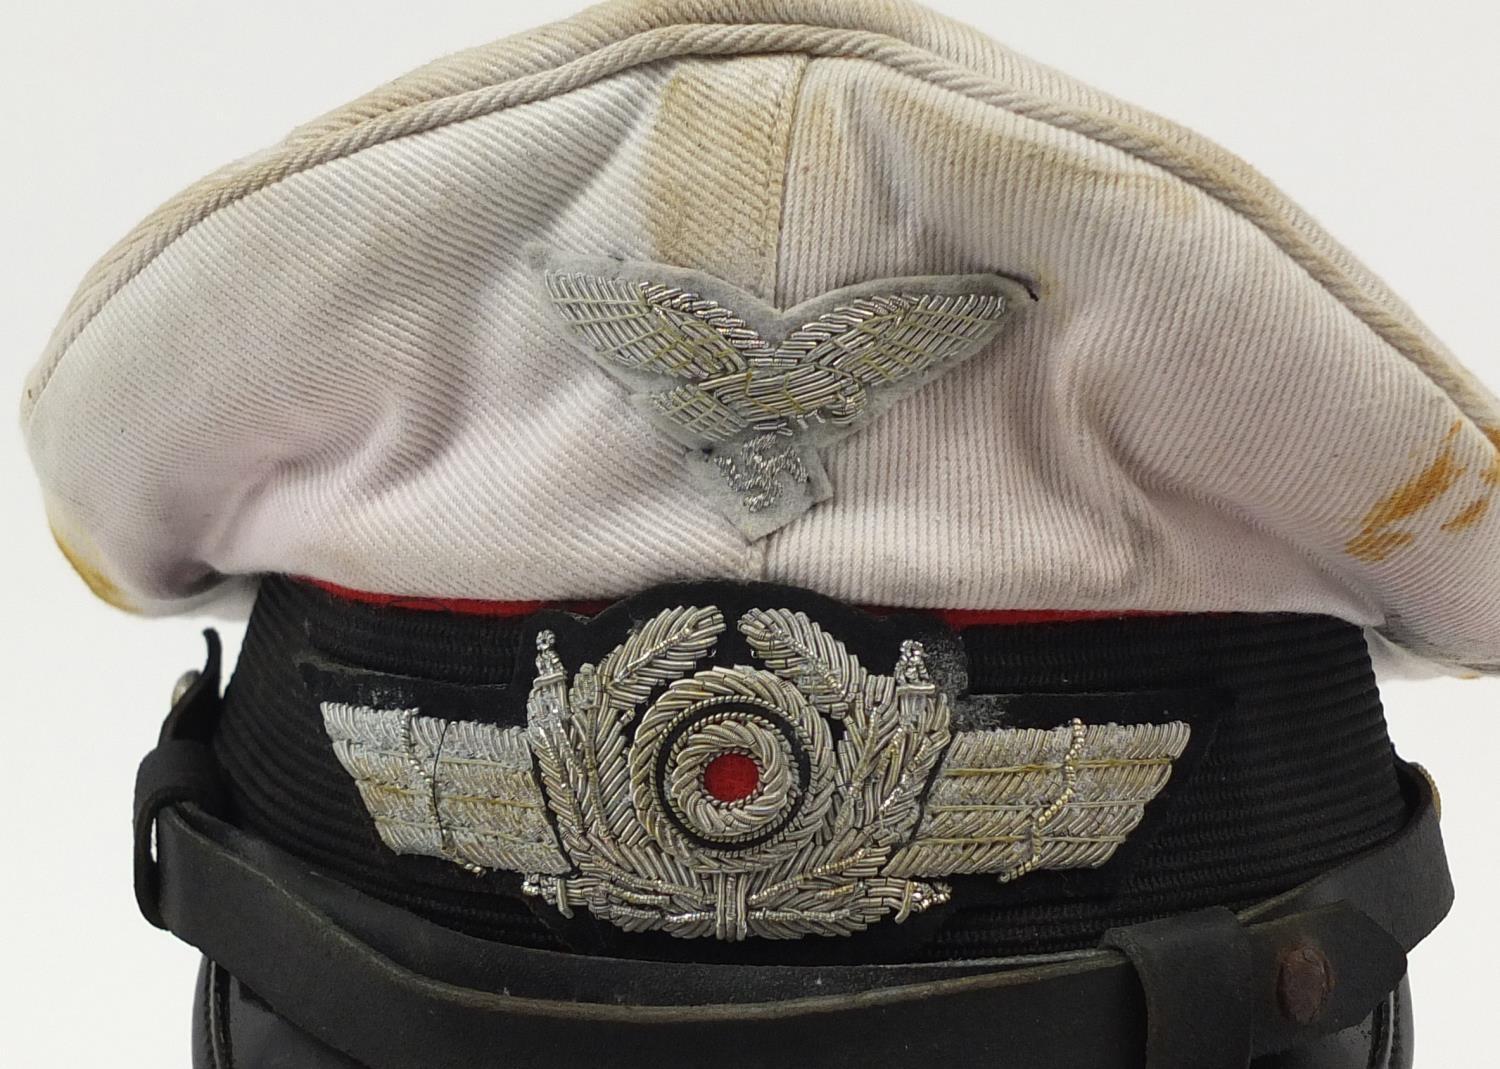 German military interest Luftwaffe visor cap with badges - Image 3 of 9